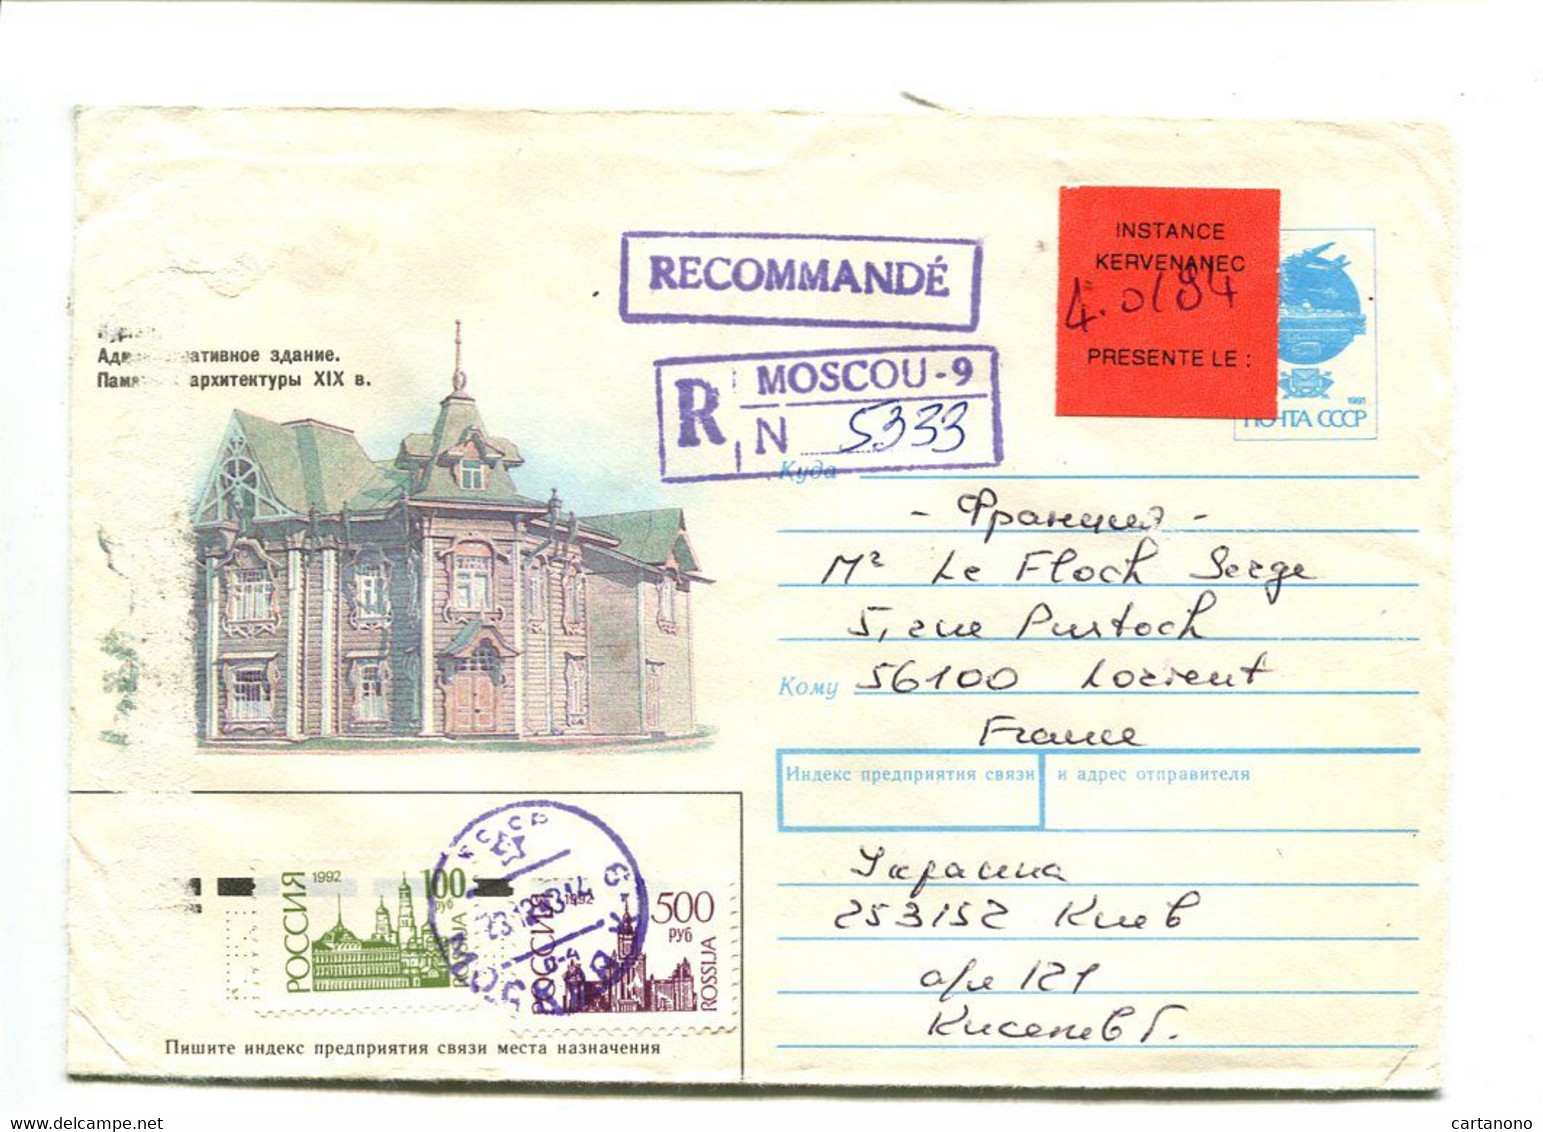 RUSSIE Moscou 1994 - Entier Postal Avec Complément D'affranchissement Pour Recommandation + Etiquette "Instance..." - Storia Postale